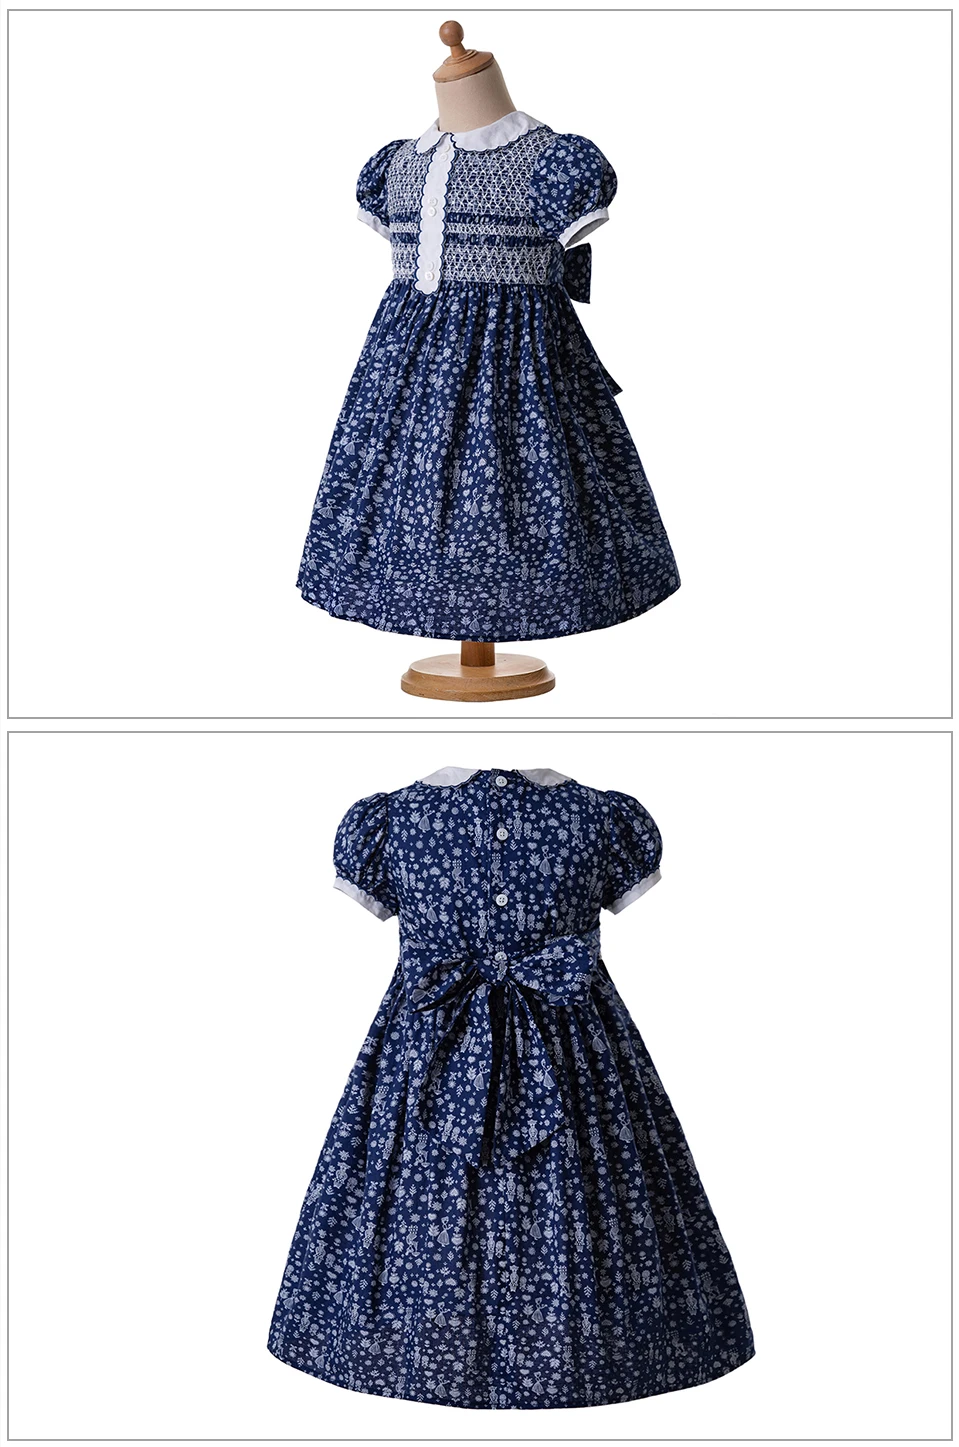 Pettigirl/винтажный цветочный принт кукла воротник со сборками Одежда для маленьких девочек Комбинезон на День Благодарения платье с оборками G-DMGD006-B44